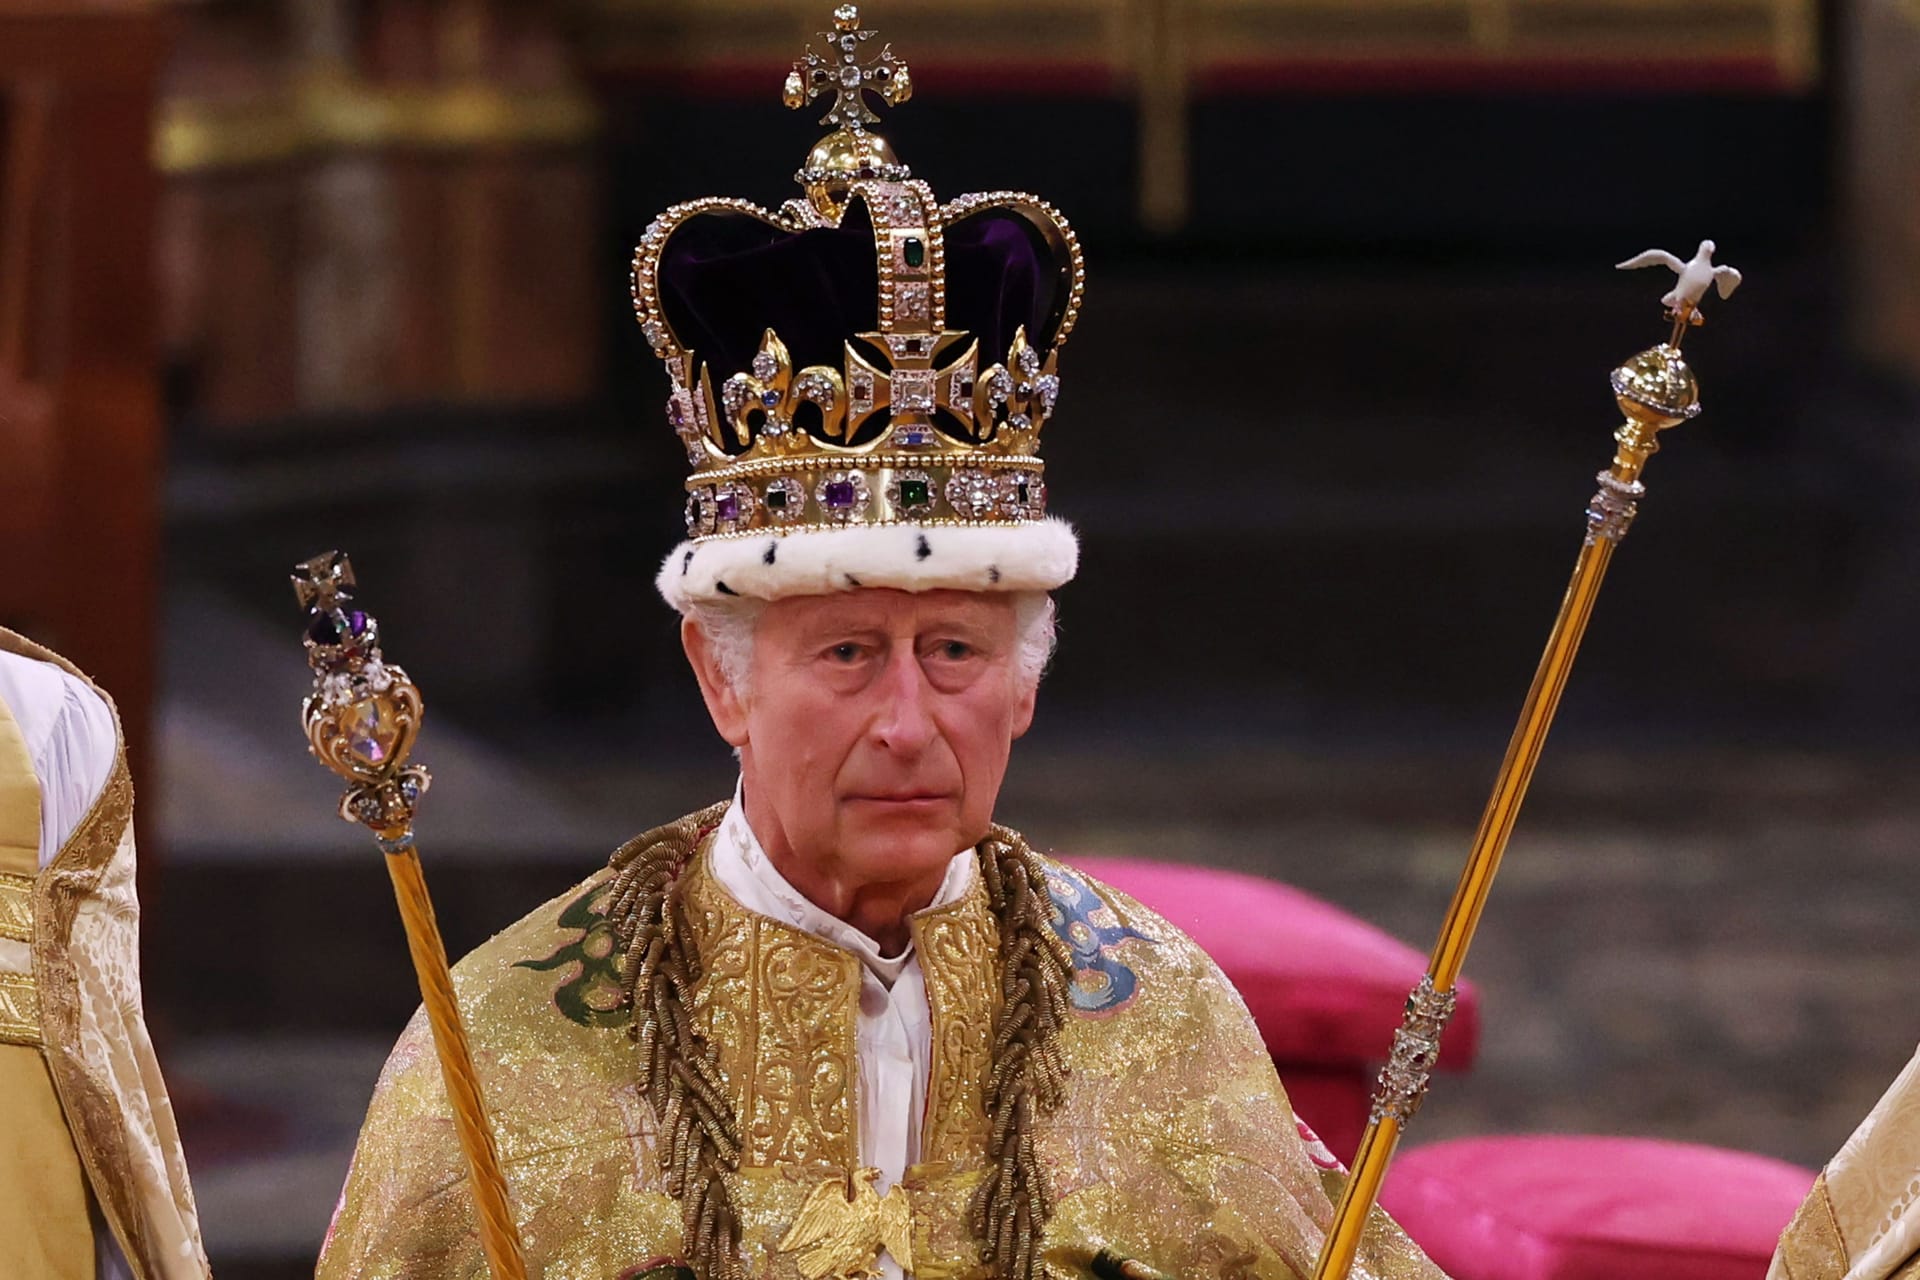 Zu schwer für seinen Kopf: Charles III. durfte die Krone nach der Krönung wieder absetzen.